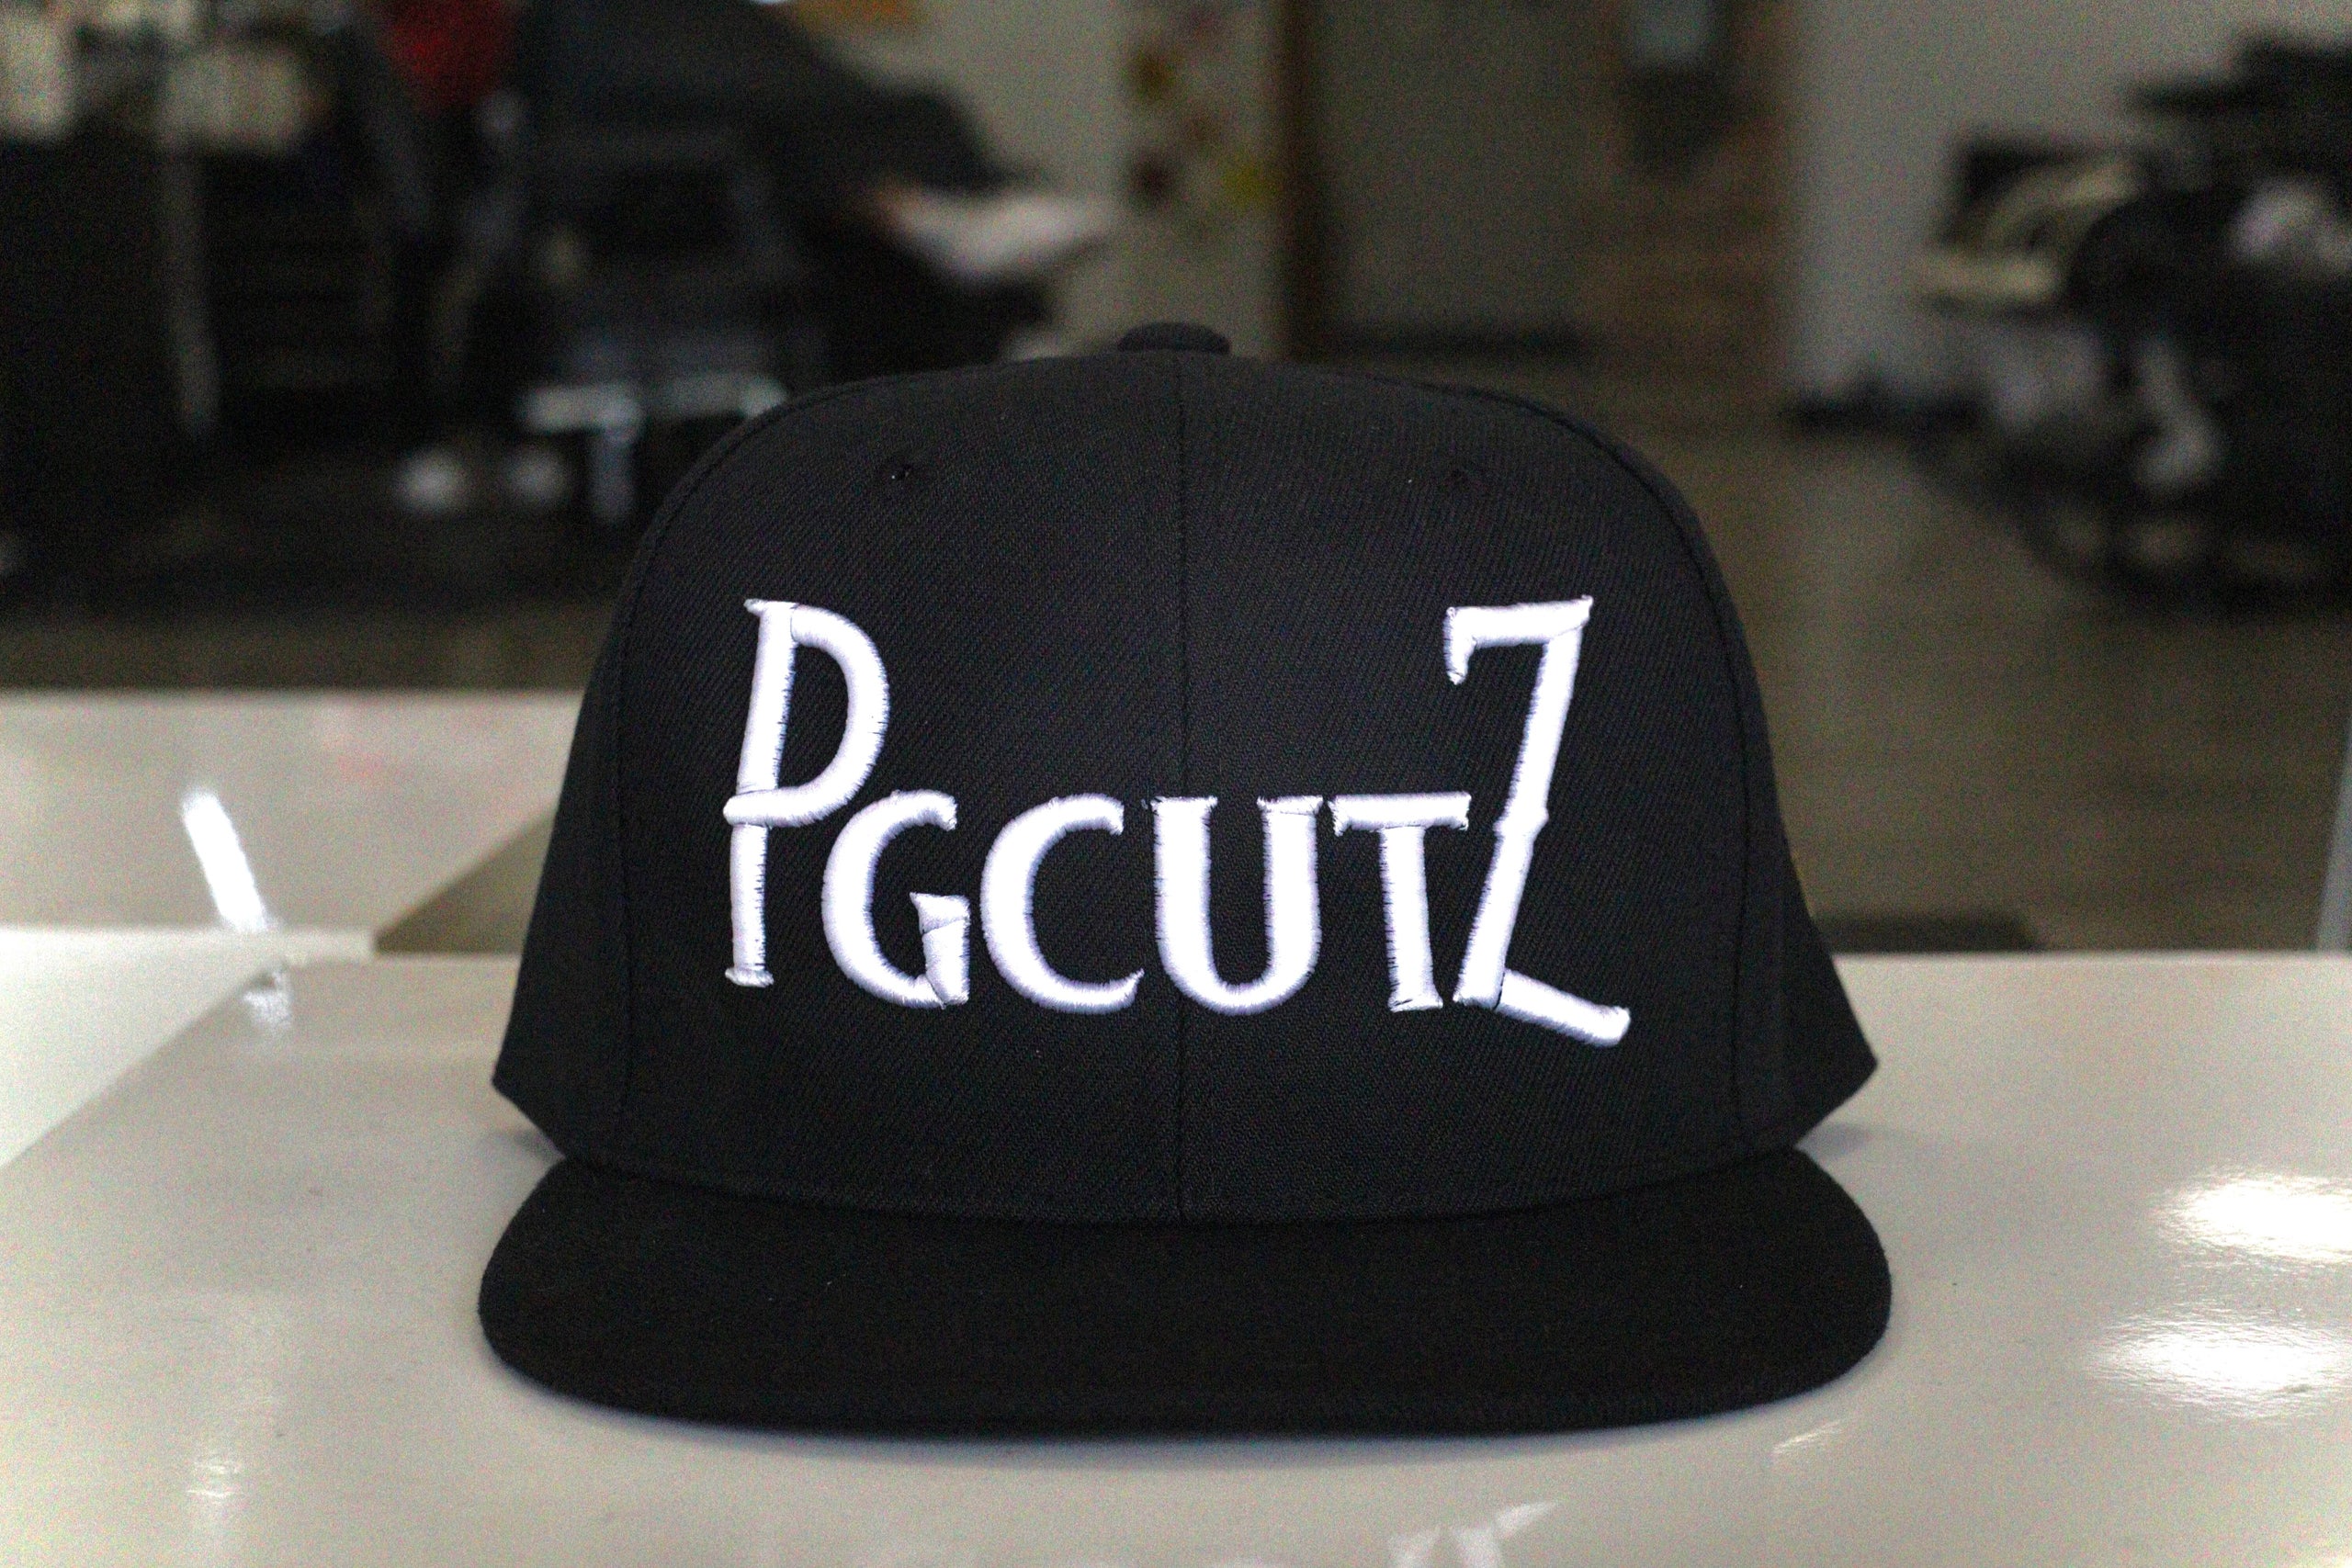 PGCUTZ Hat | PGCutz